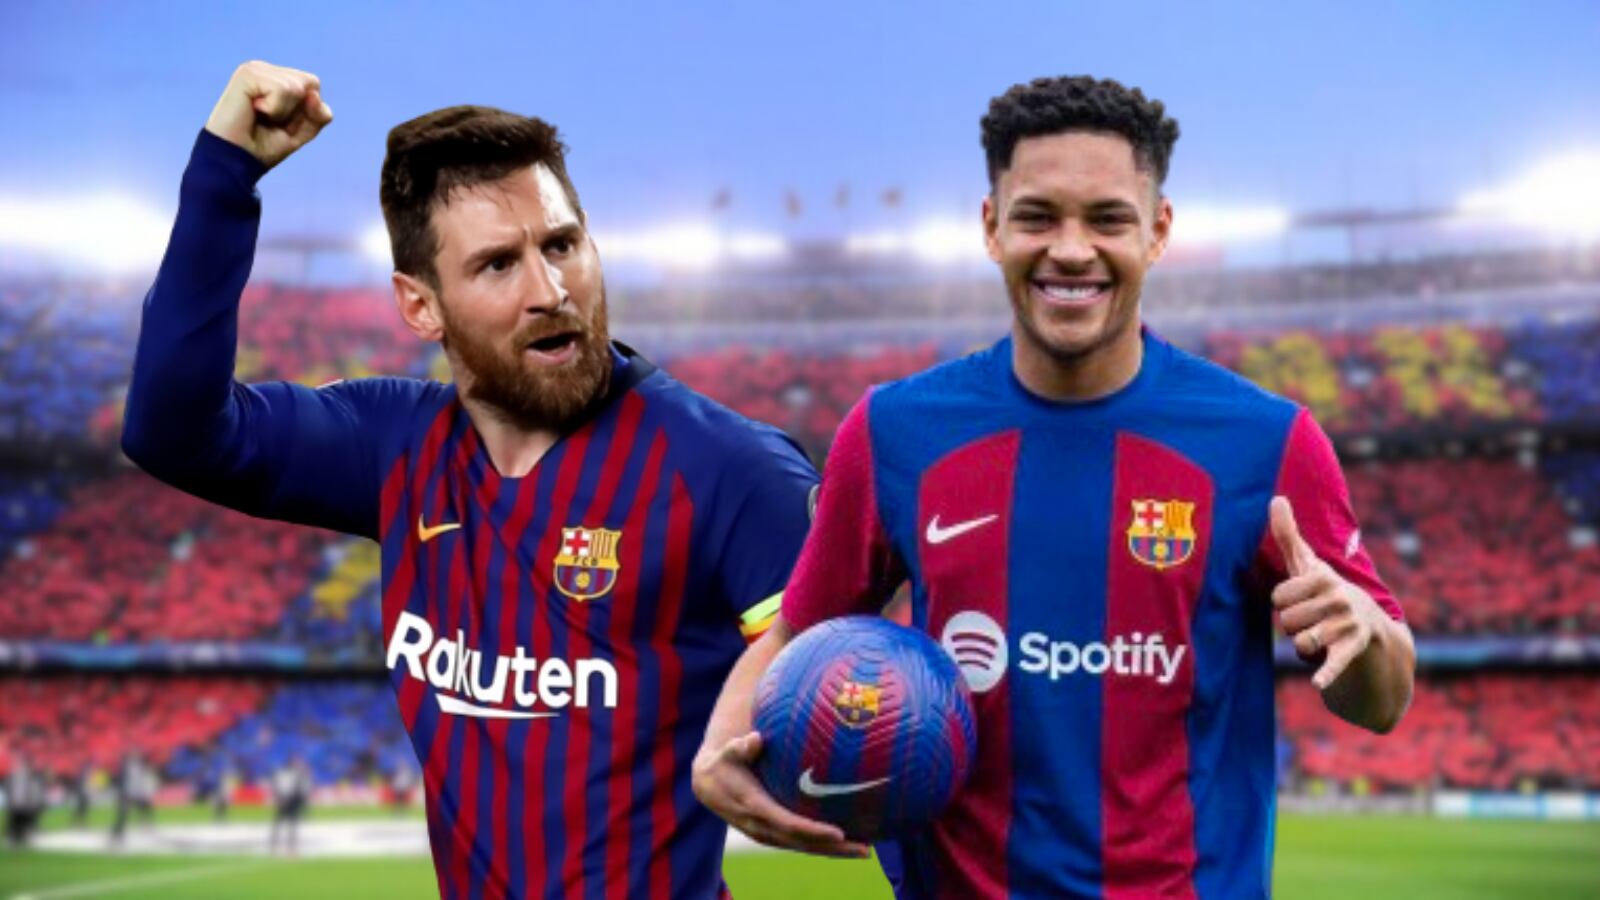 Mientras Vitor Roque fue presentado, el nuevo Messi que ilusiona al Barça